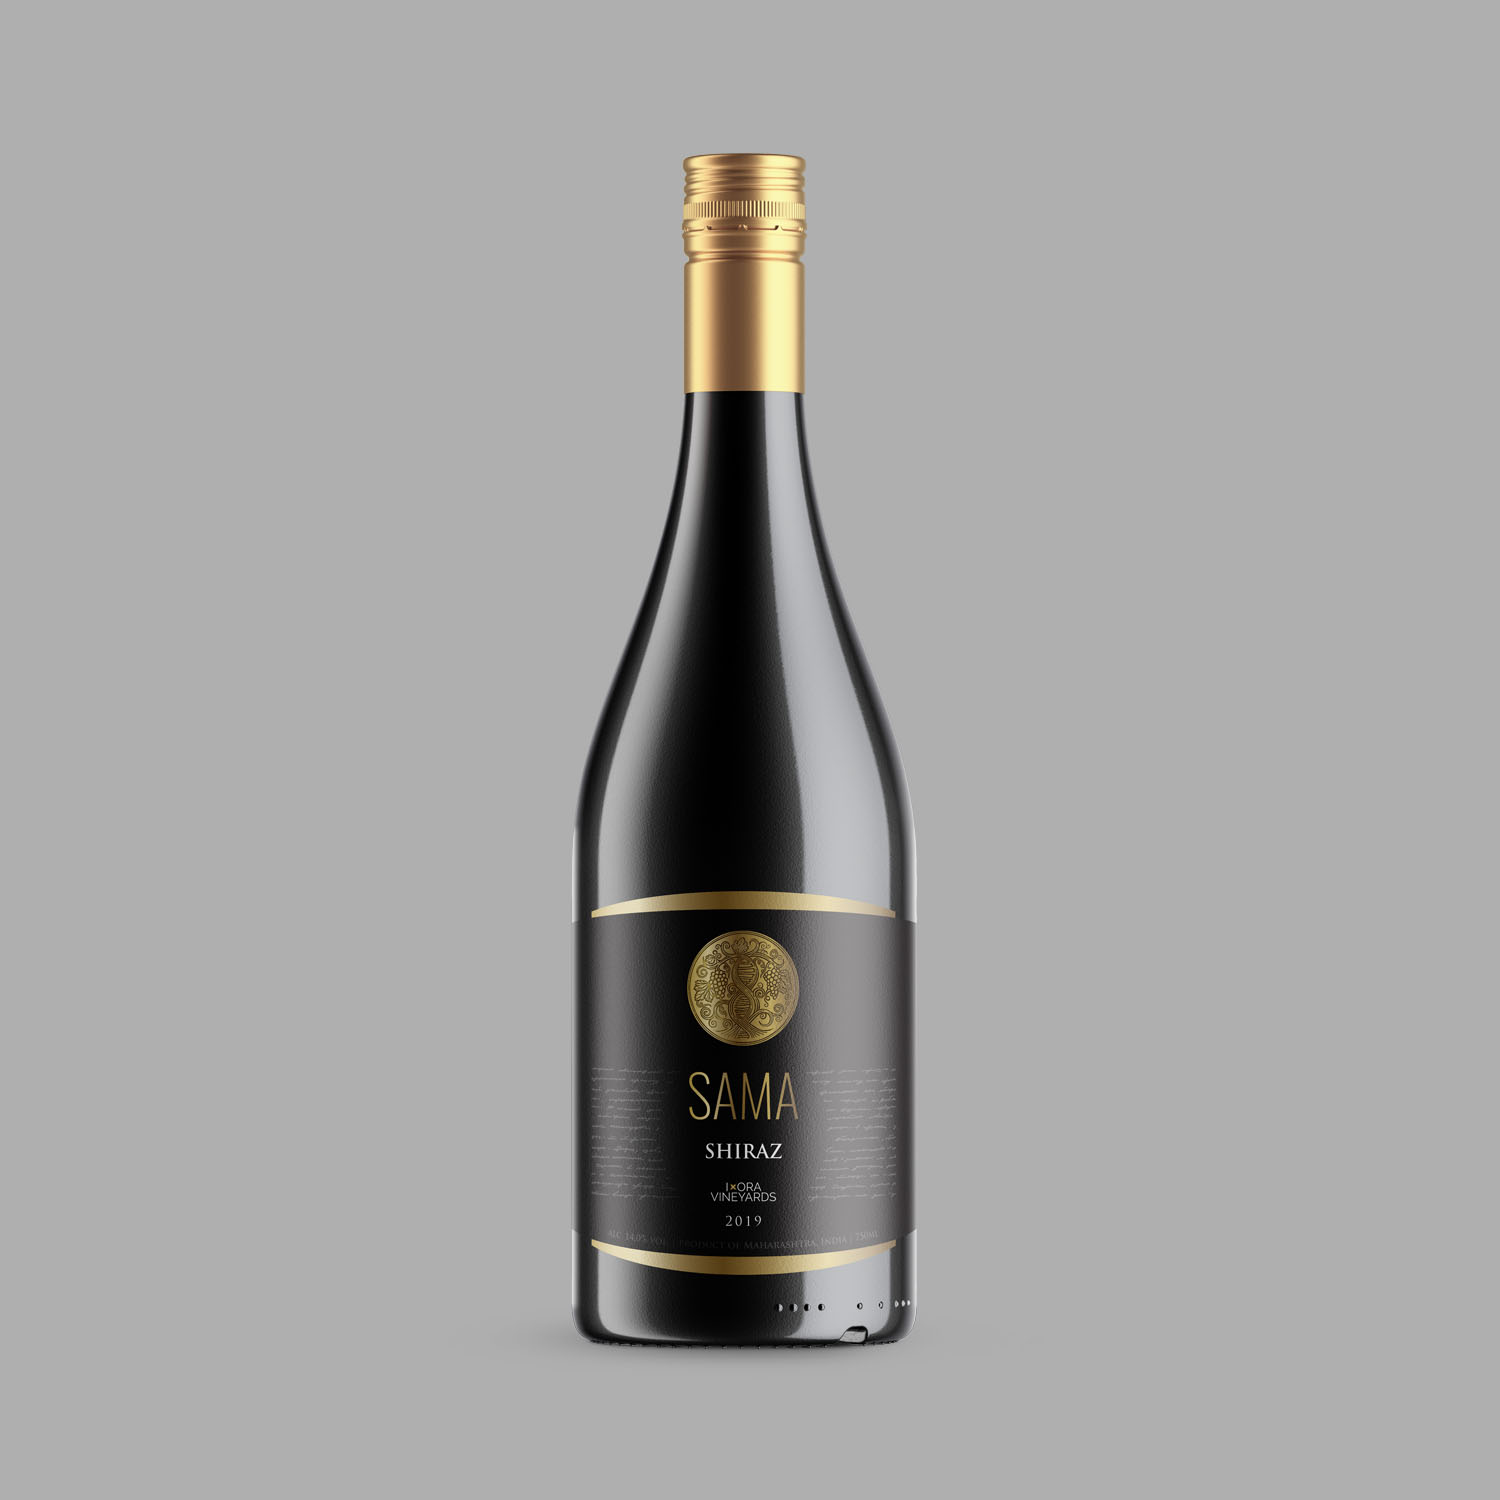 Label design for shiraz wine